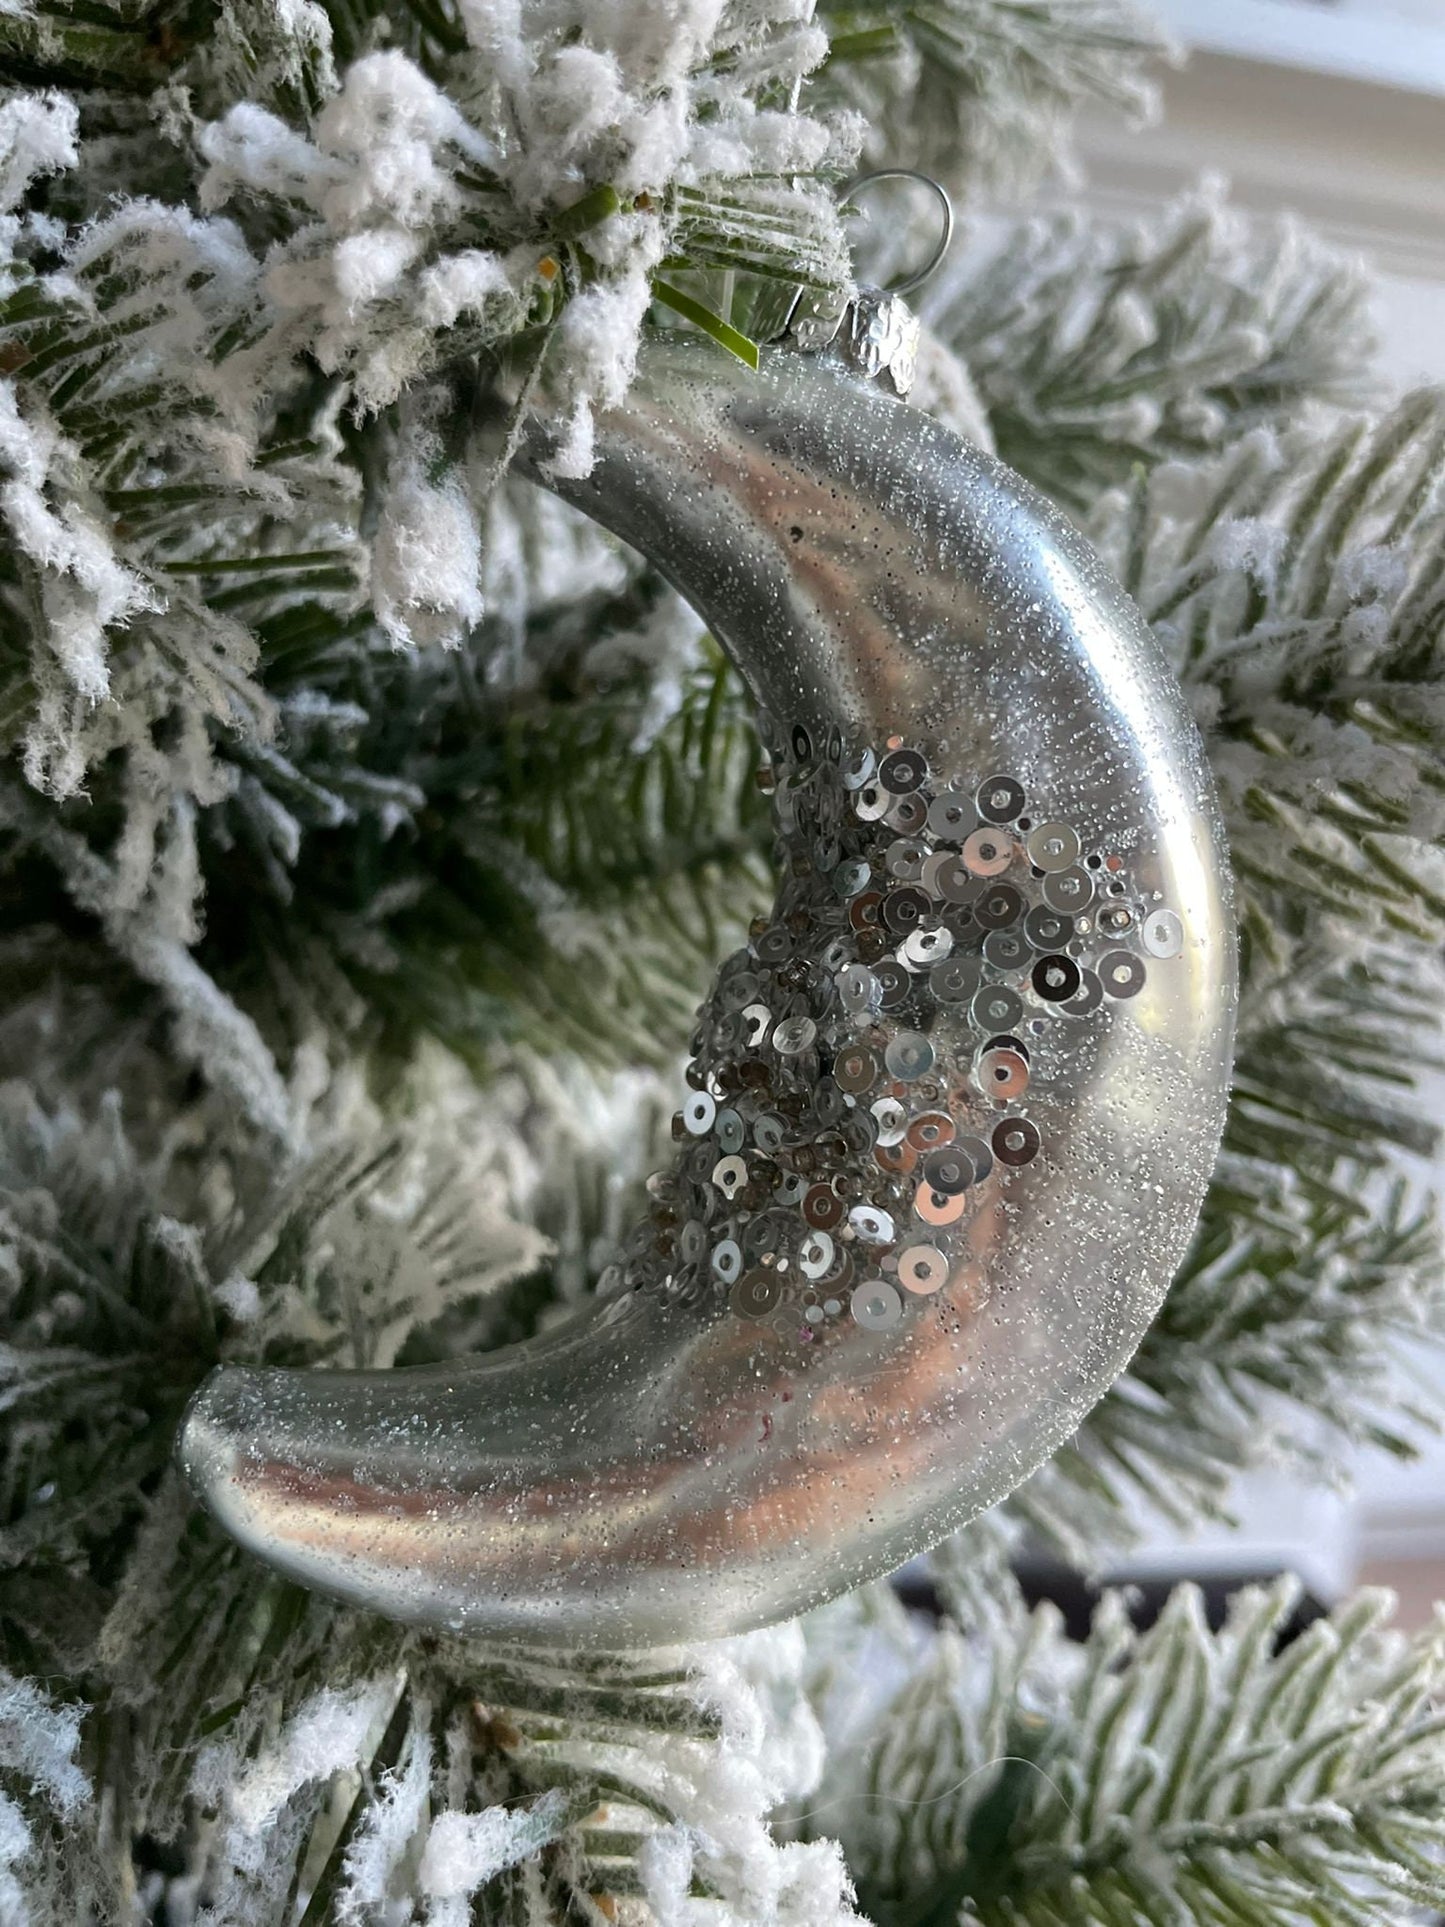 4"glass glitter/sequin half moon ornament